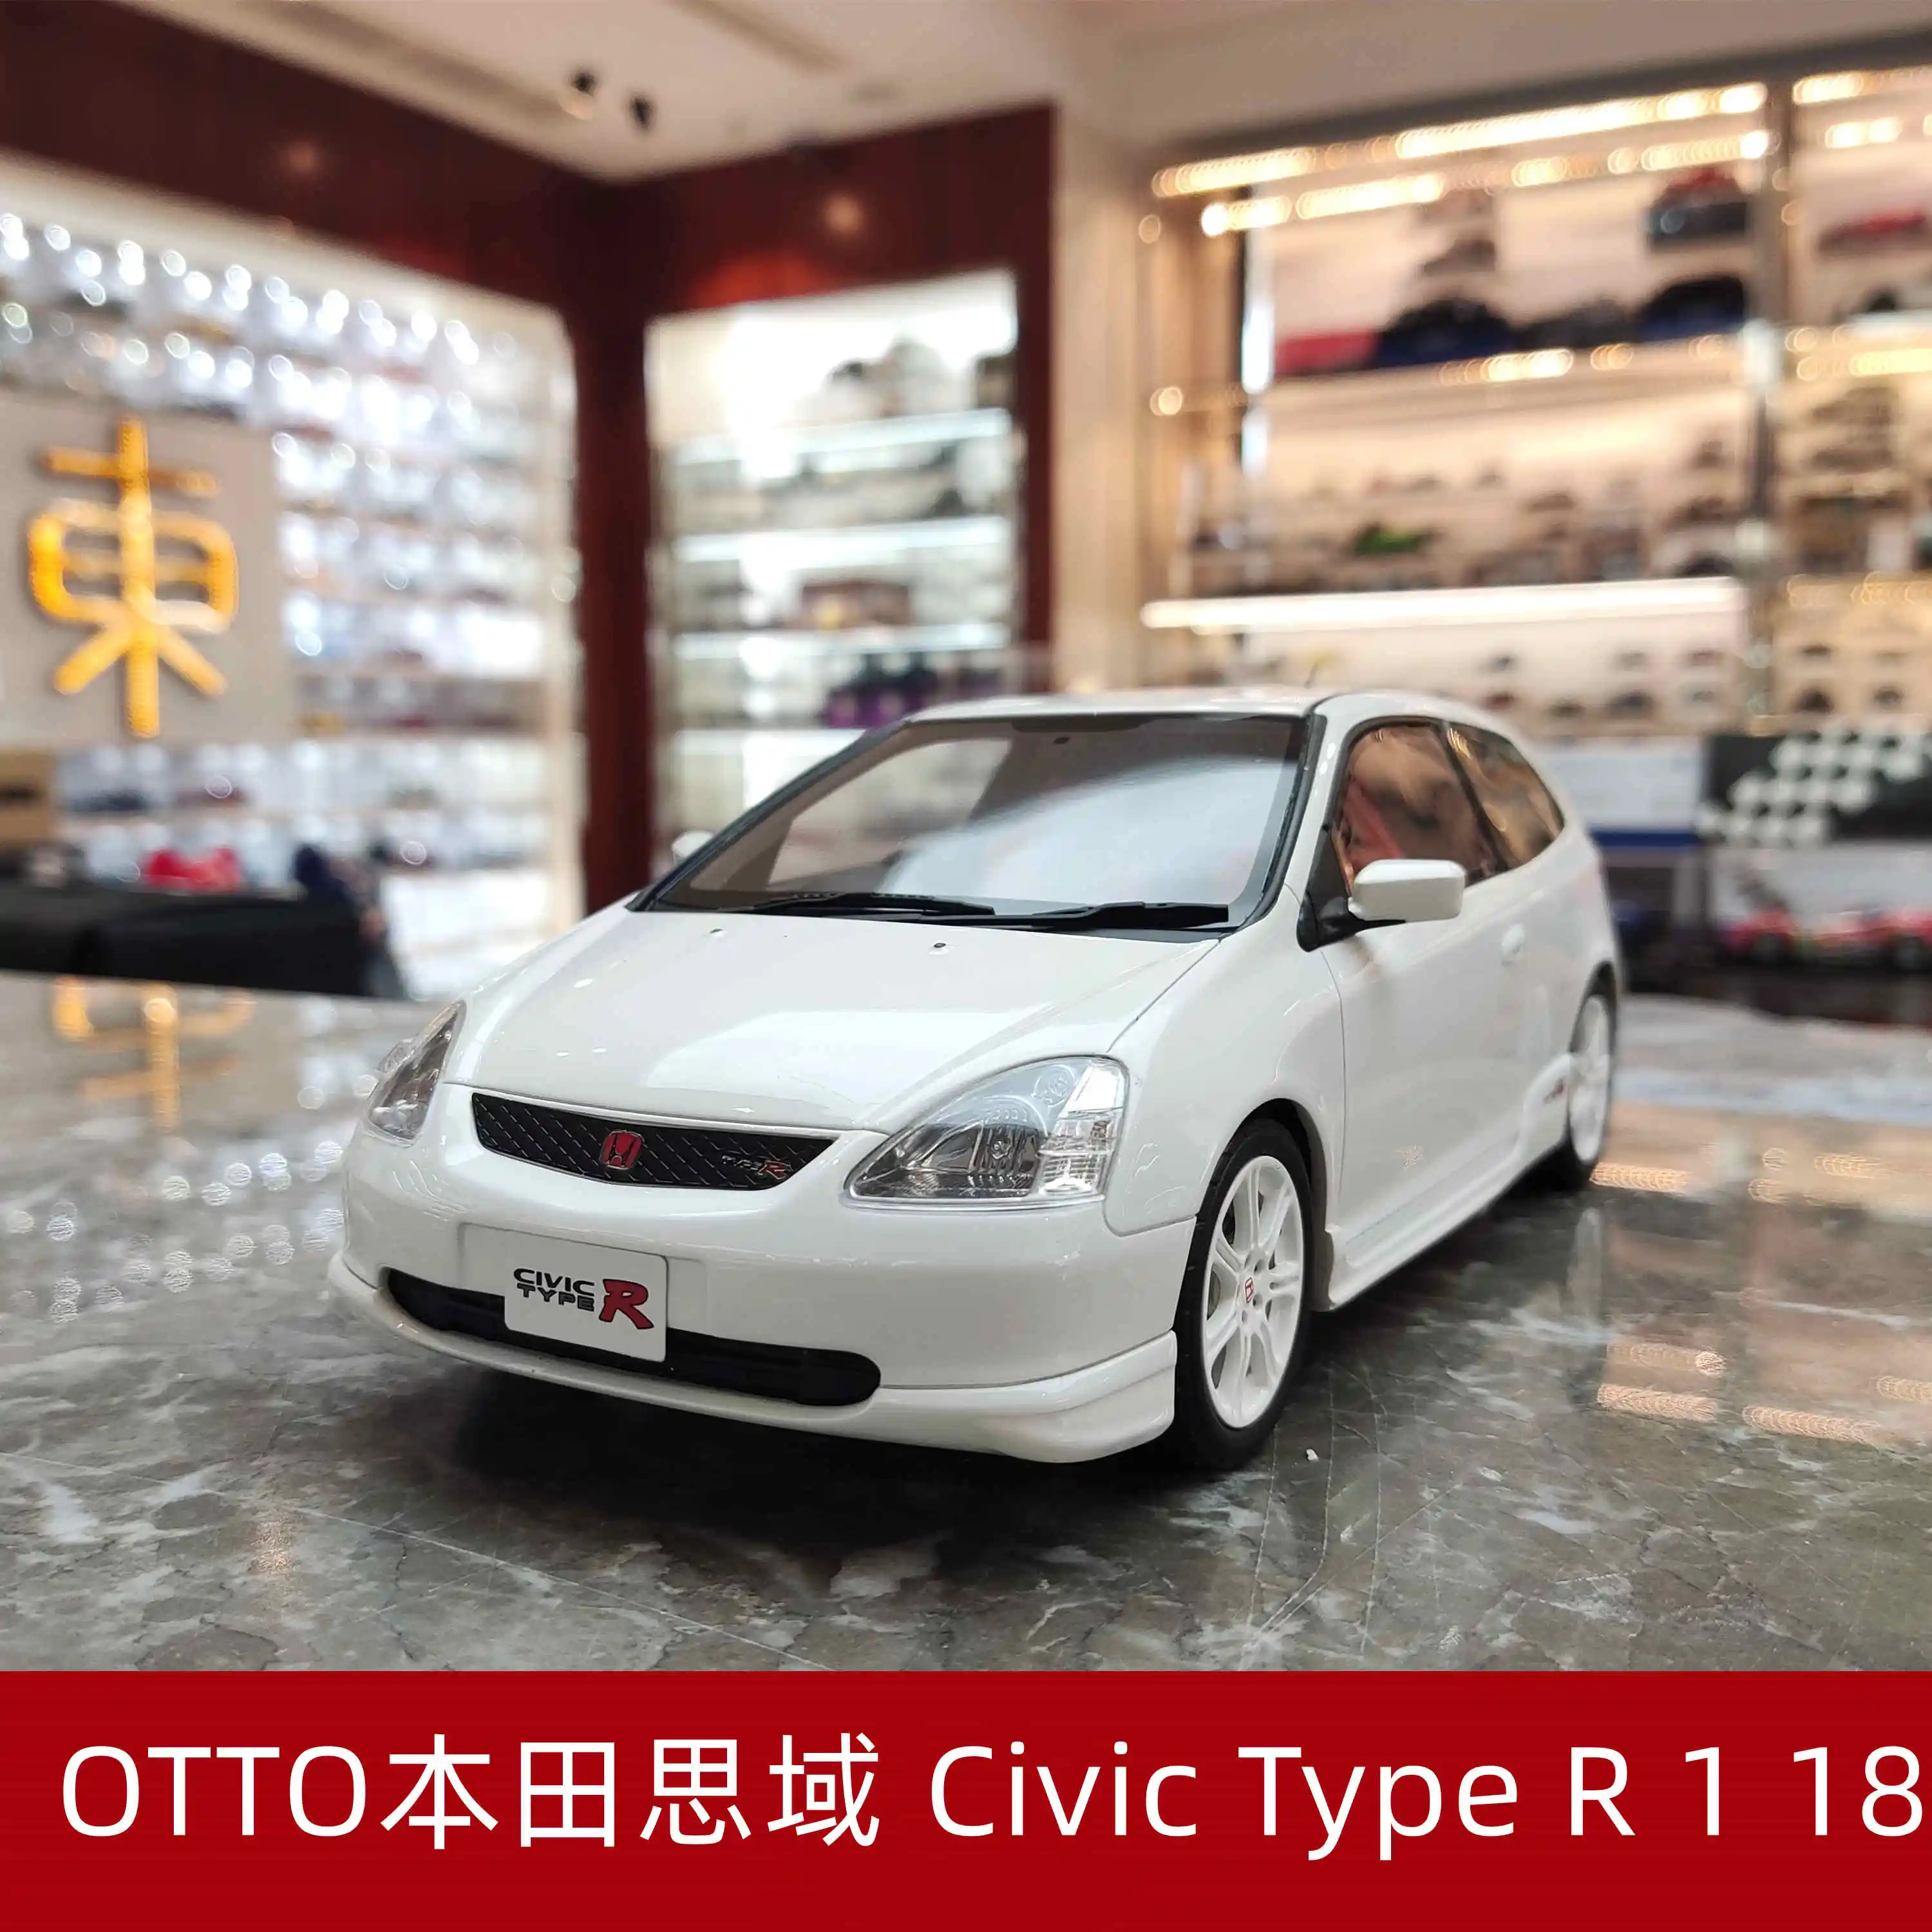 

OTTO 1/18 Honda Civic Тип R Ограниченная серия имитация смолы коллекция литых под давлением моделей автомобилей